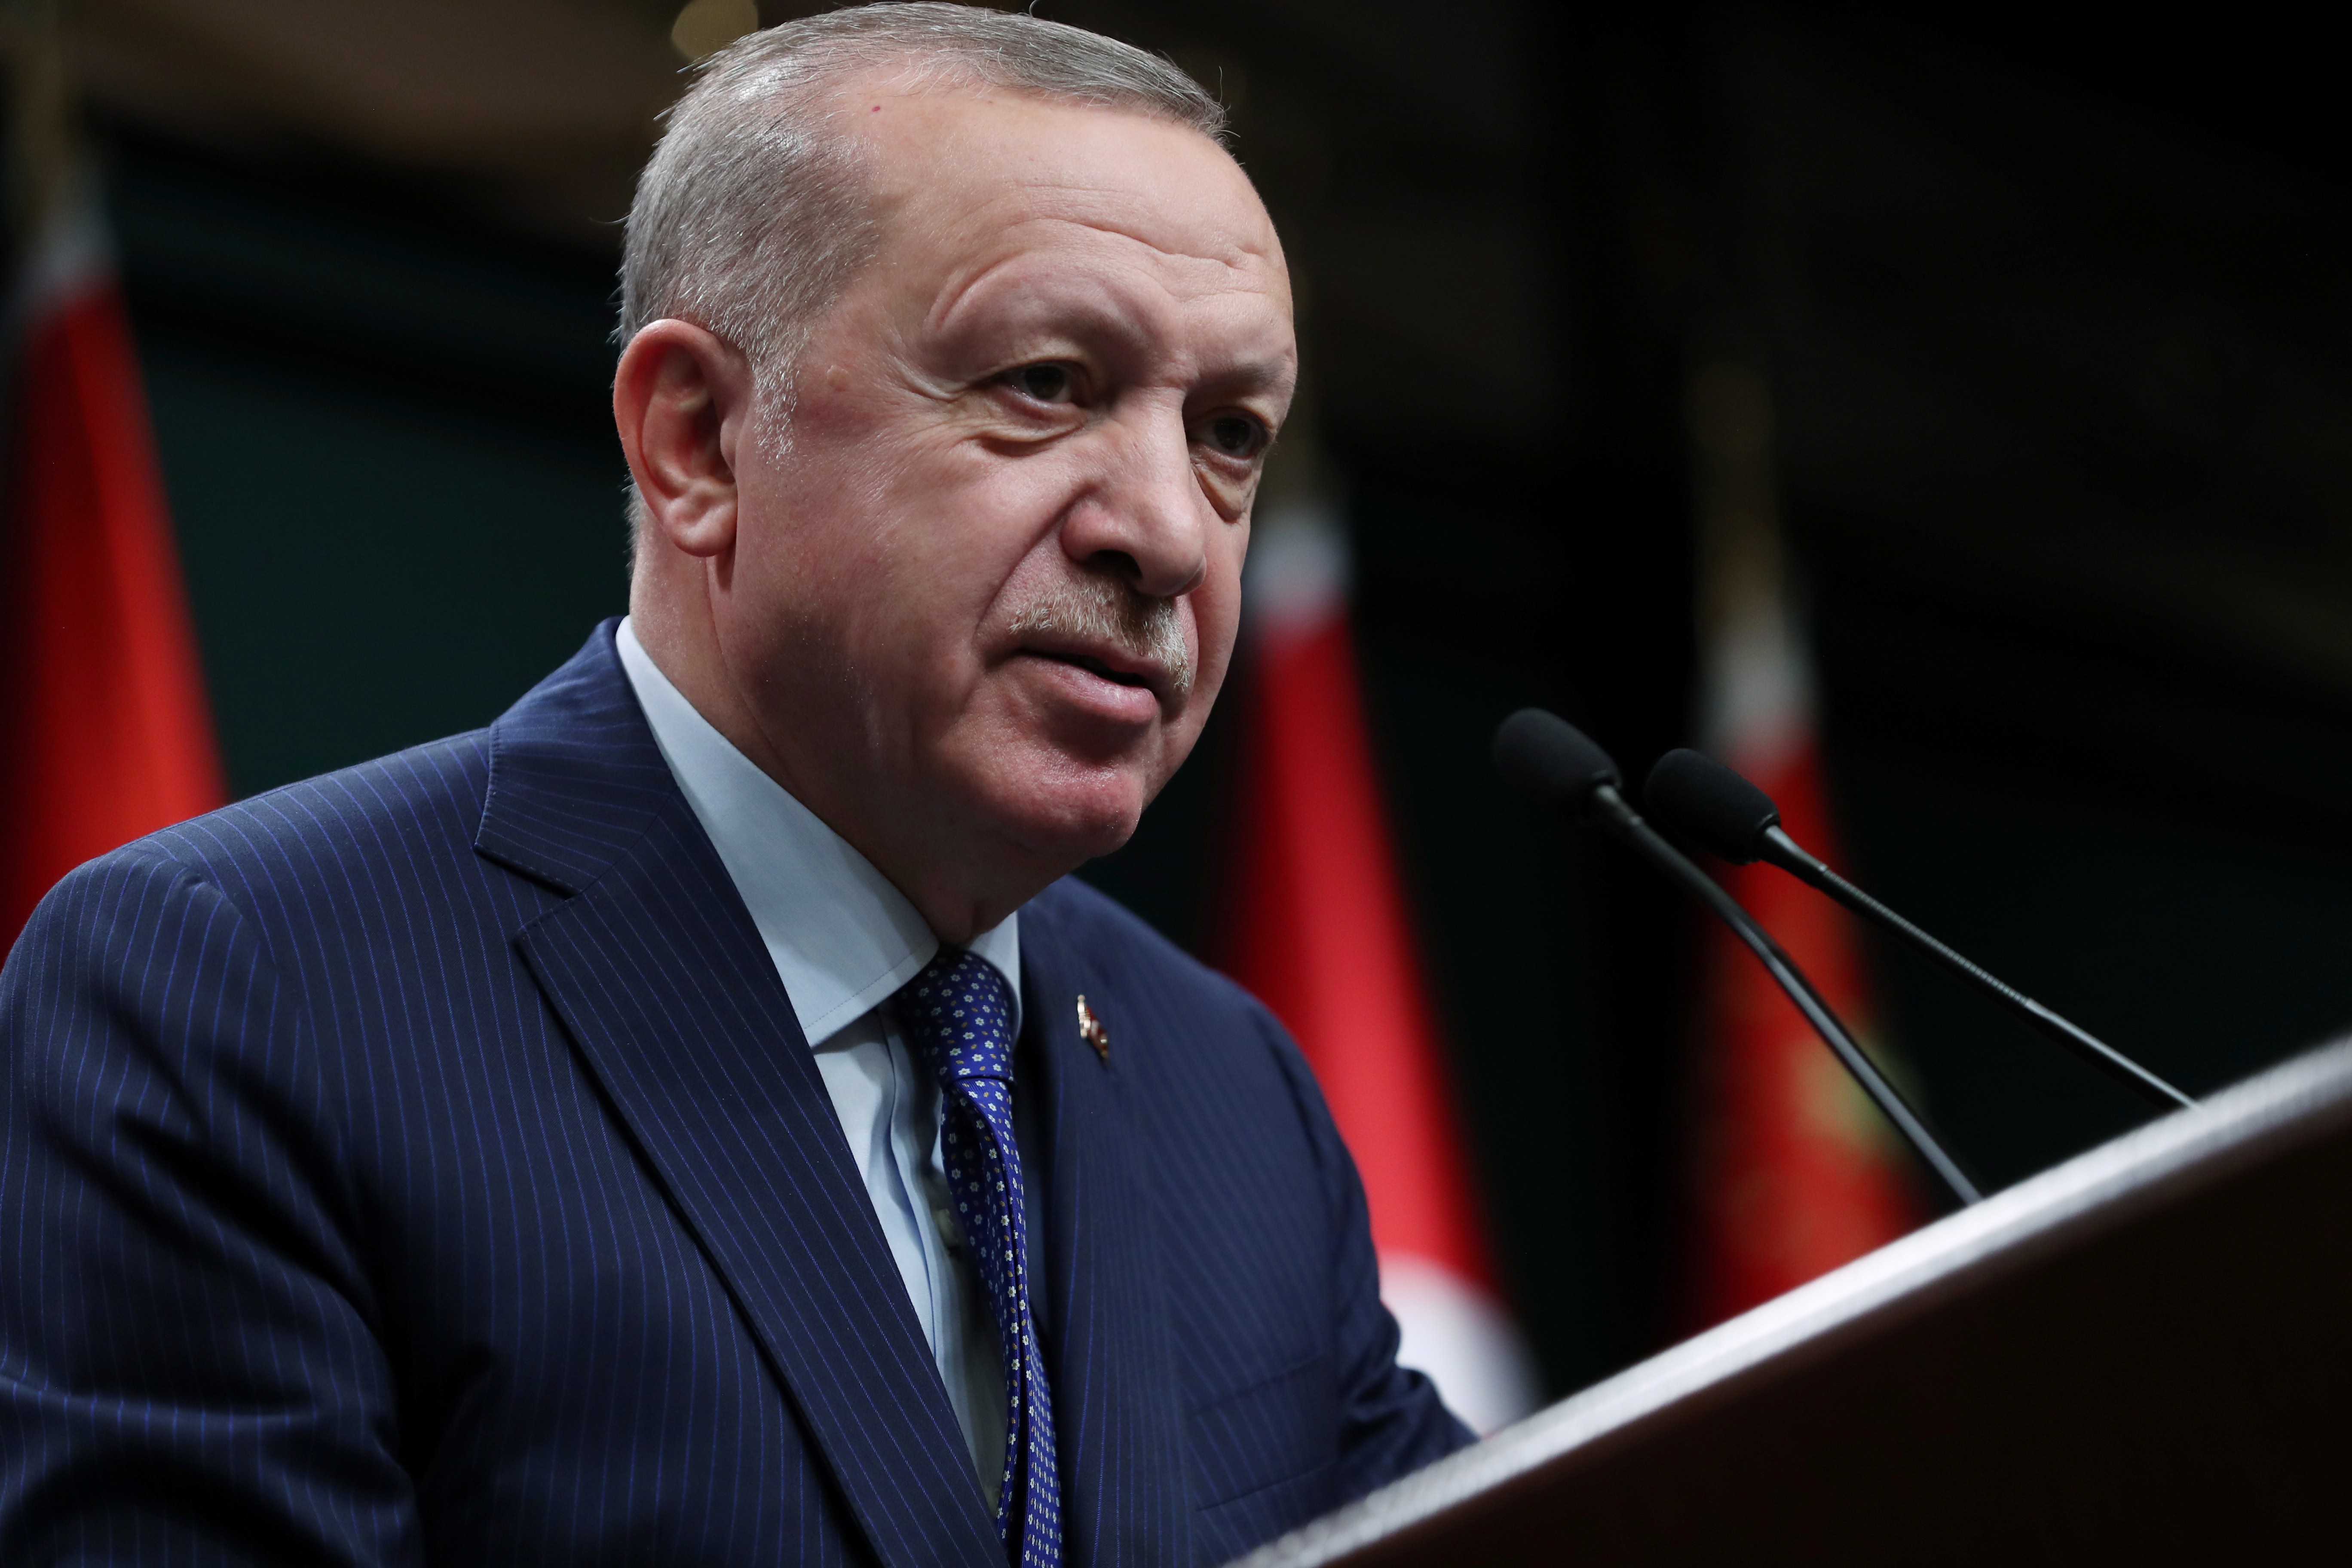 turqu-a-descubre-m-s-gas-natural-en-el-mar-negro-dice-erdogan